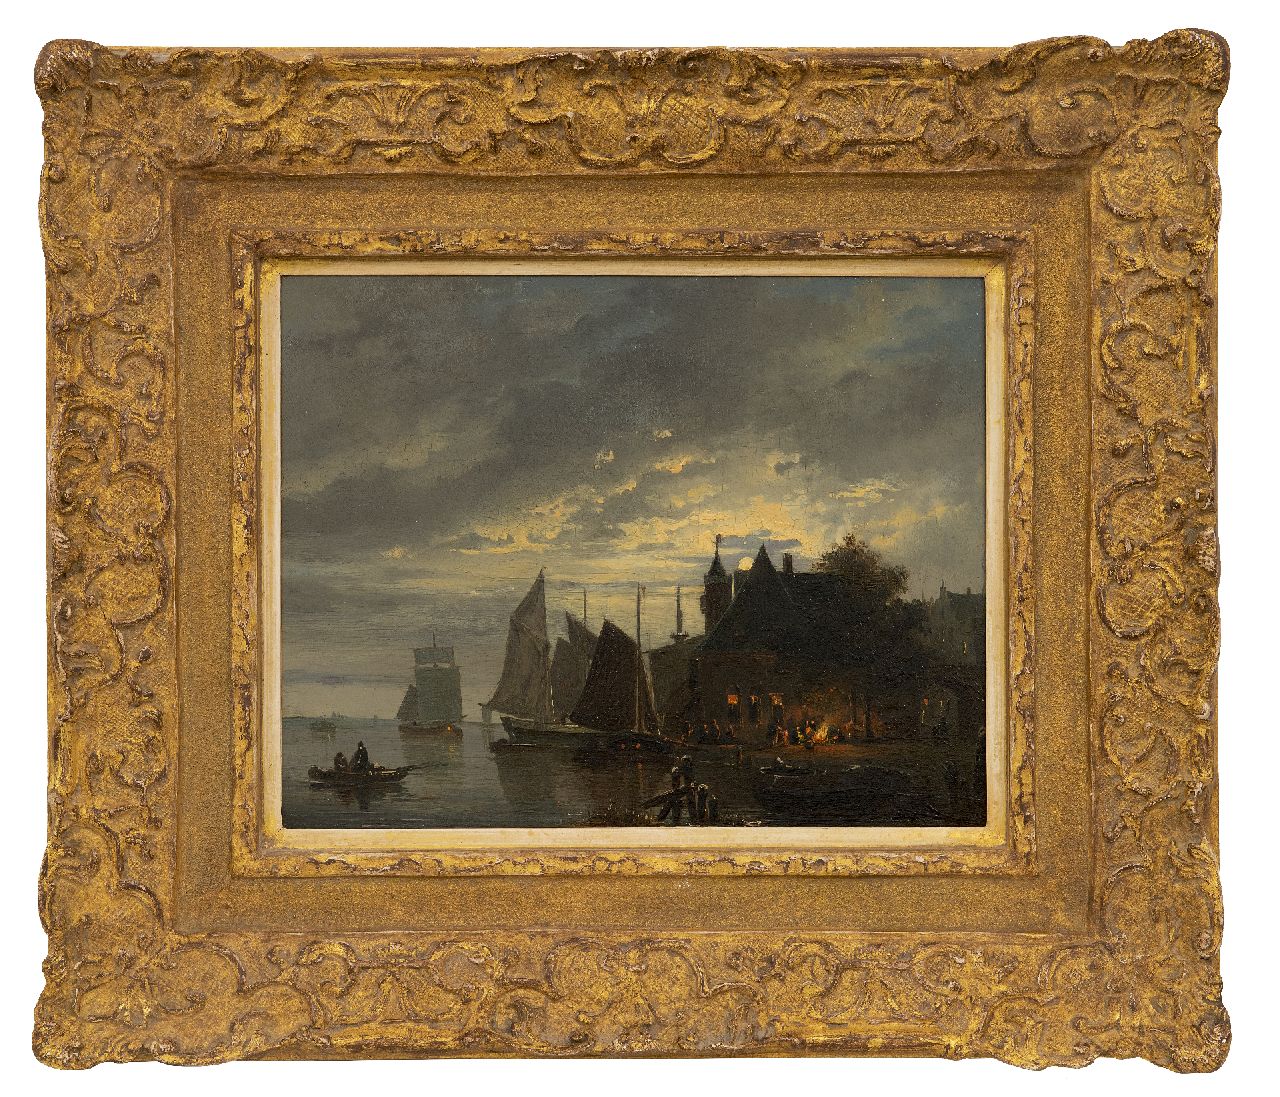 Cate H.G. ten | Hendrik Gerrit ten Cate | Schilderijen te koop aangeboden | Veerstoep en aangemeerde zeilschepen bij maanlicht, olieverf op paneel 25,1 x 32,0 cm